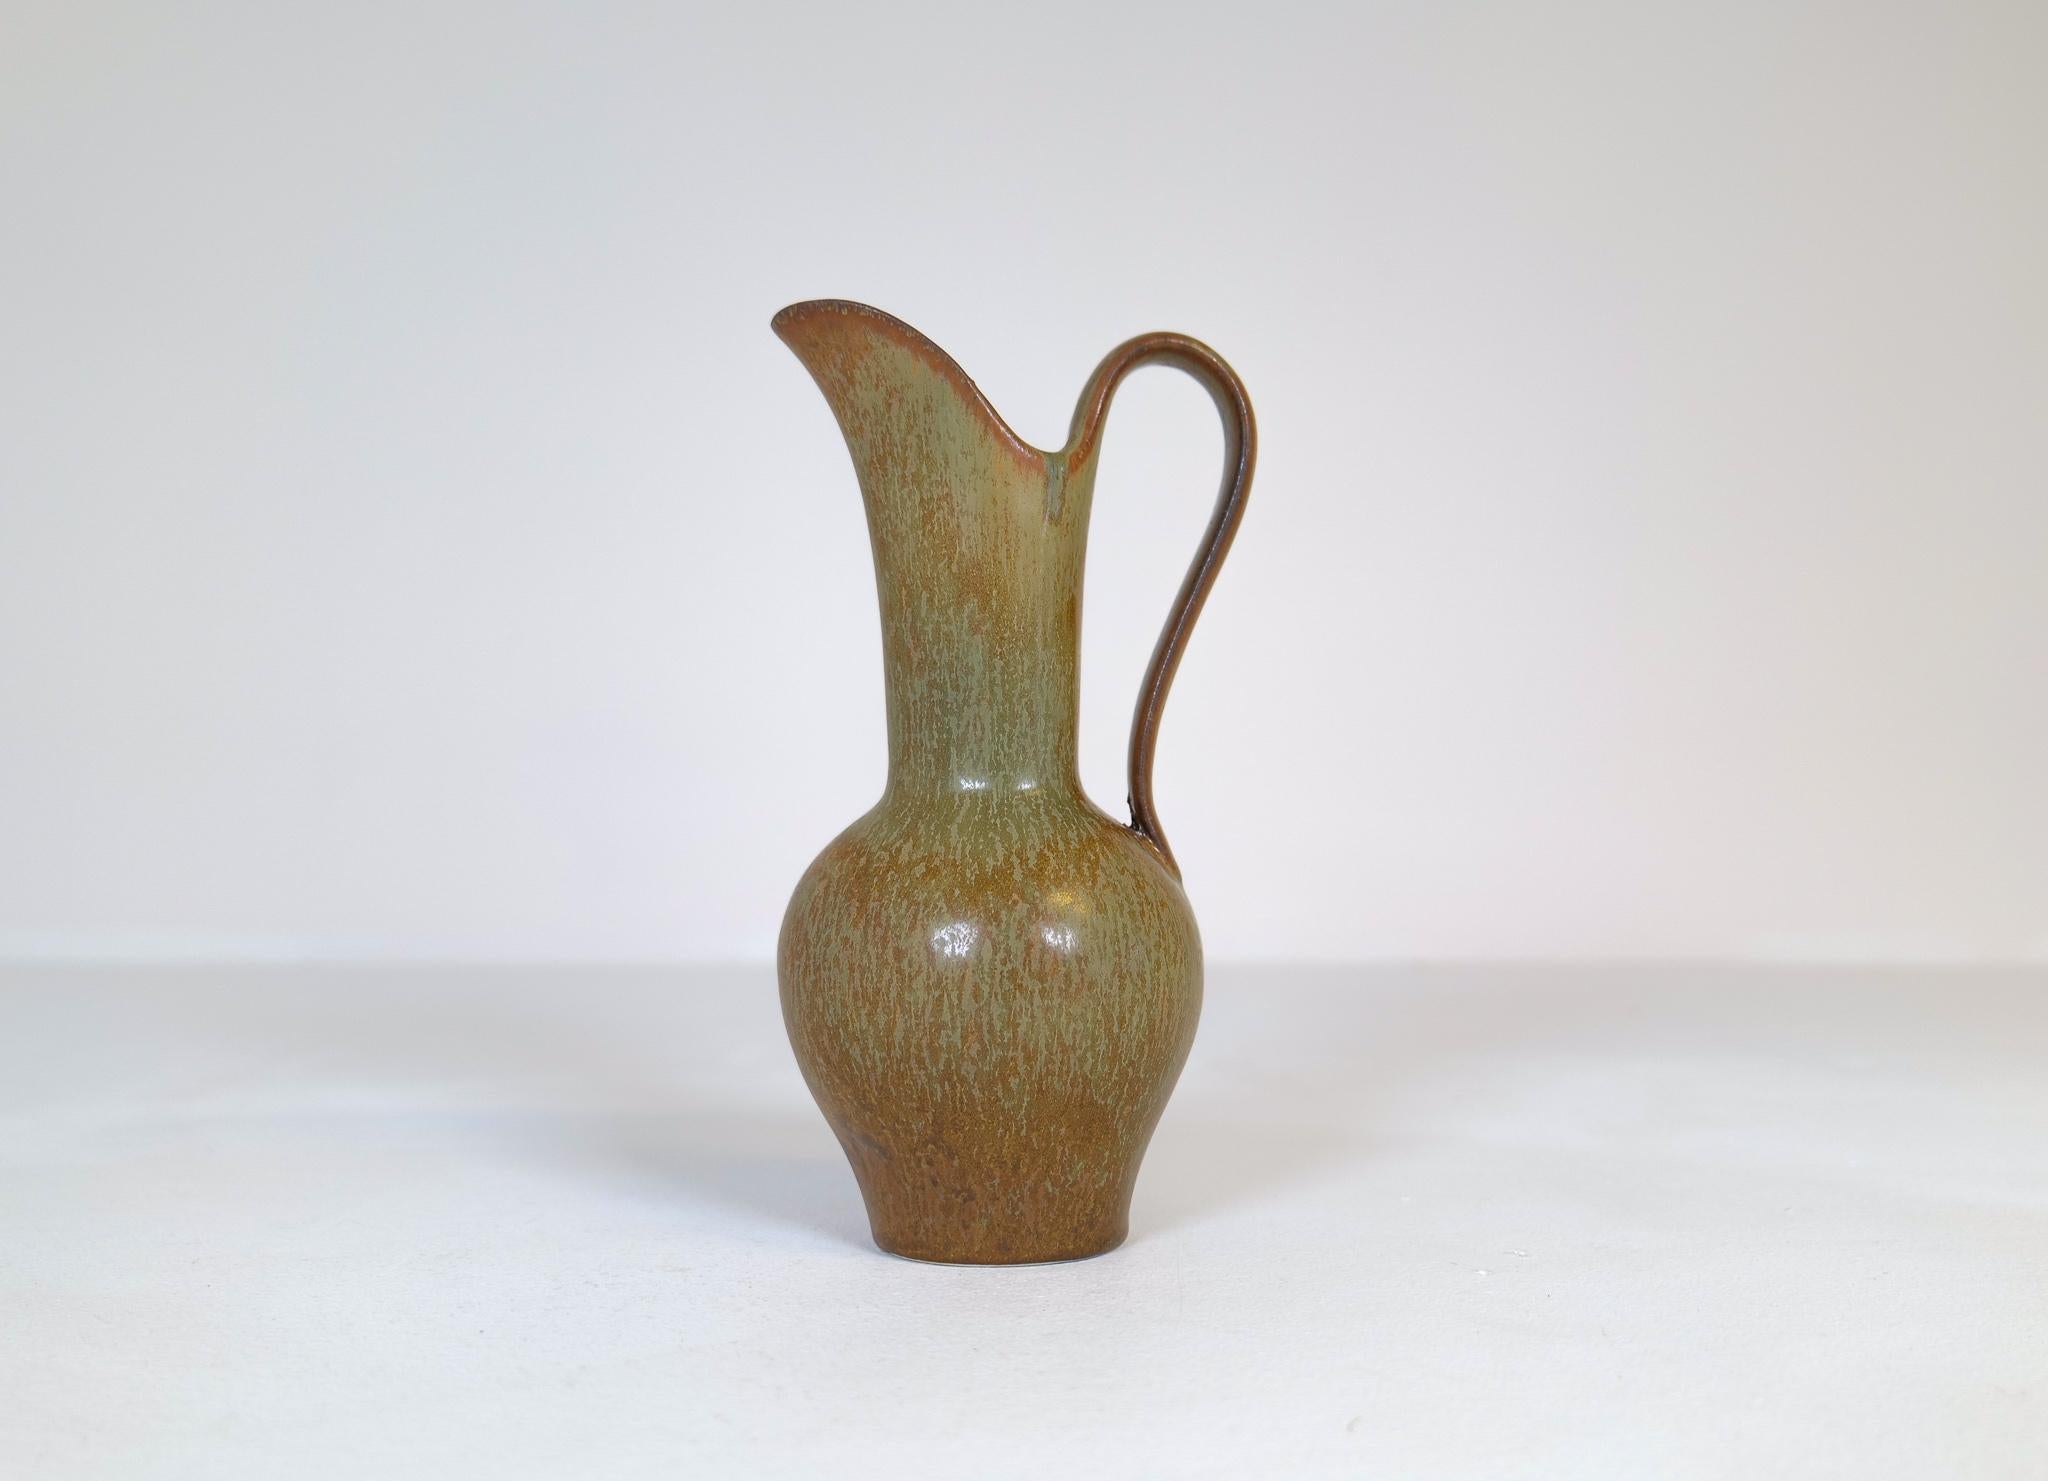 Die grüne/braune Glasur ist erstaunlich und passt wunderbar zu der Form und Form dieser Vase, die zu einer nicht so üblichen Vase gehört. 

In sehr gutem Zustand. 

Abmessungen: Höhe 24 cm, Tiefe 11 cm Breite 12 cm.
 
 